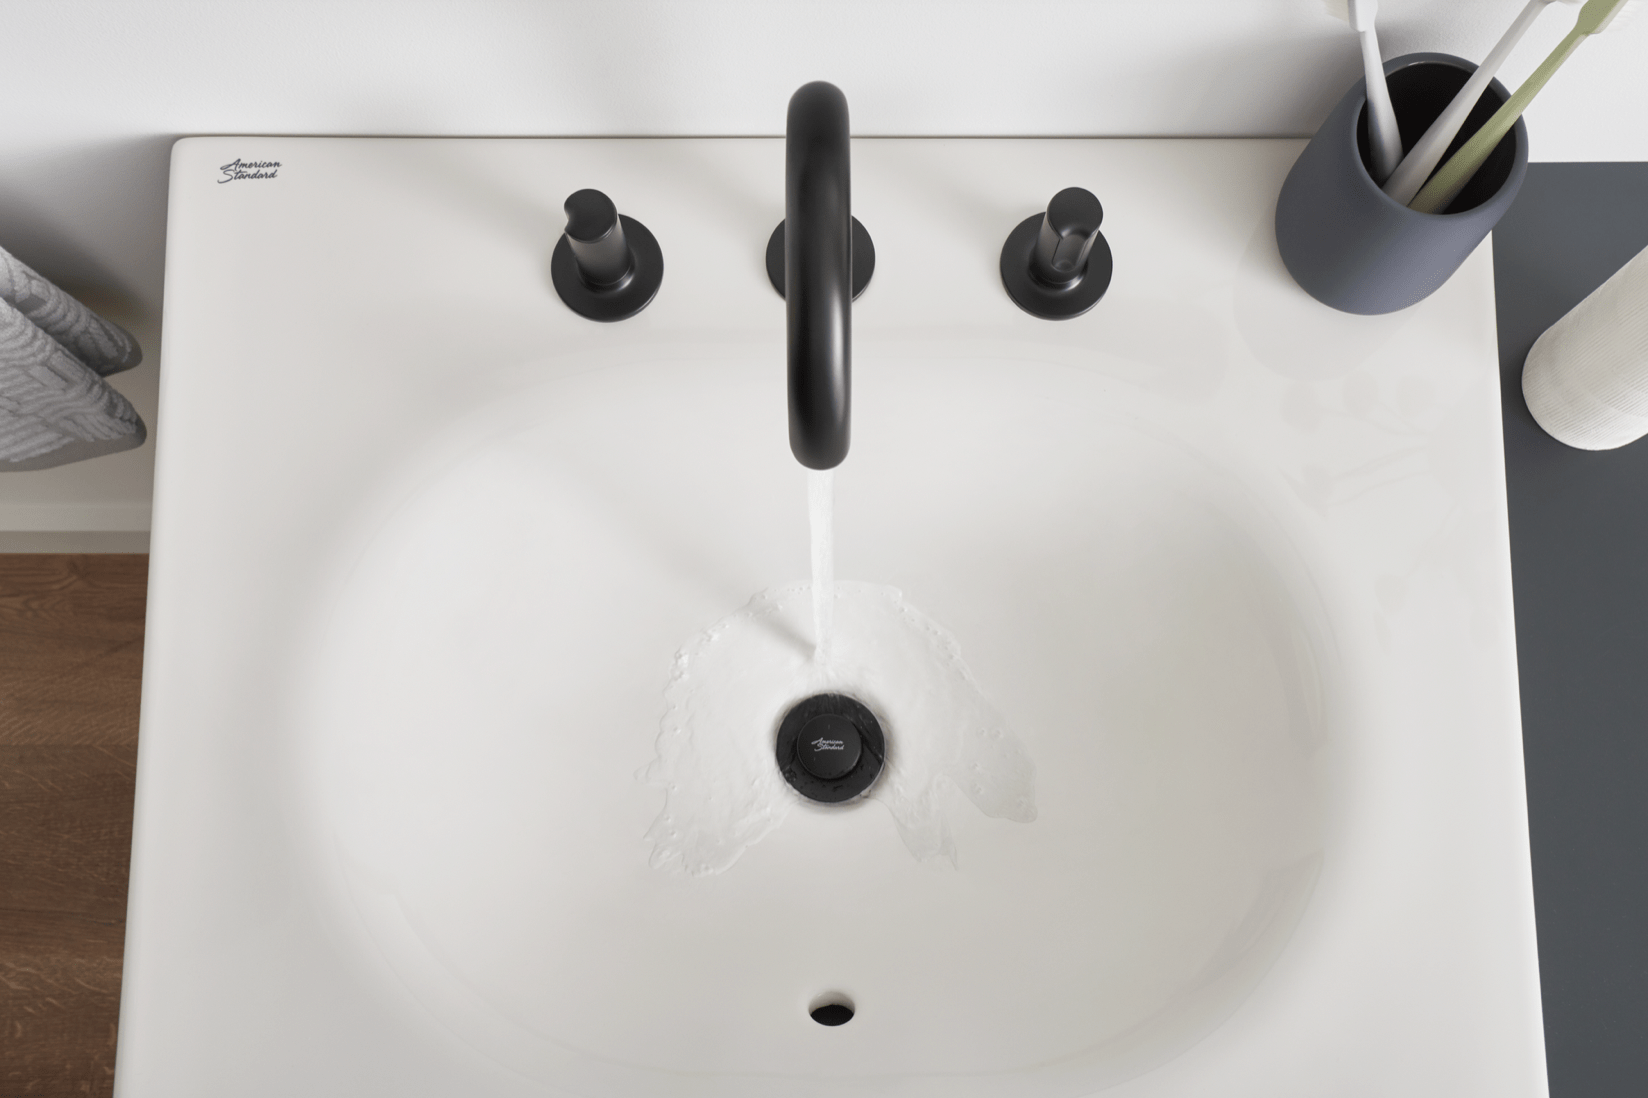 Studio S Widespread Bathroom Faucet